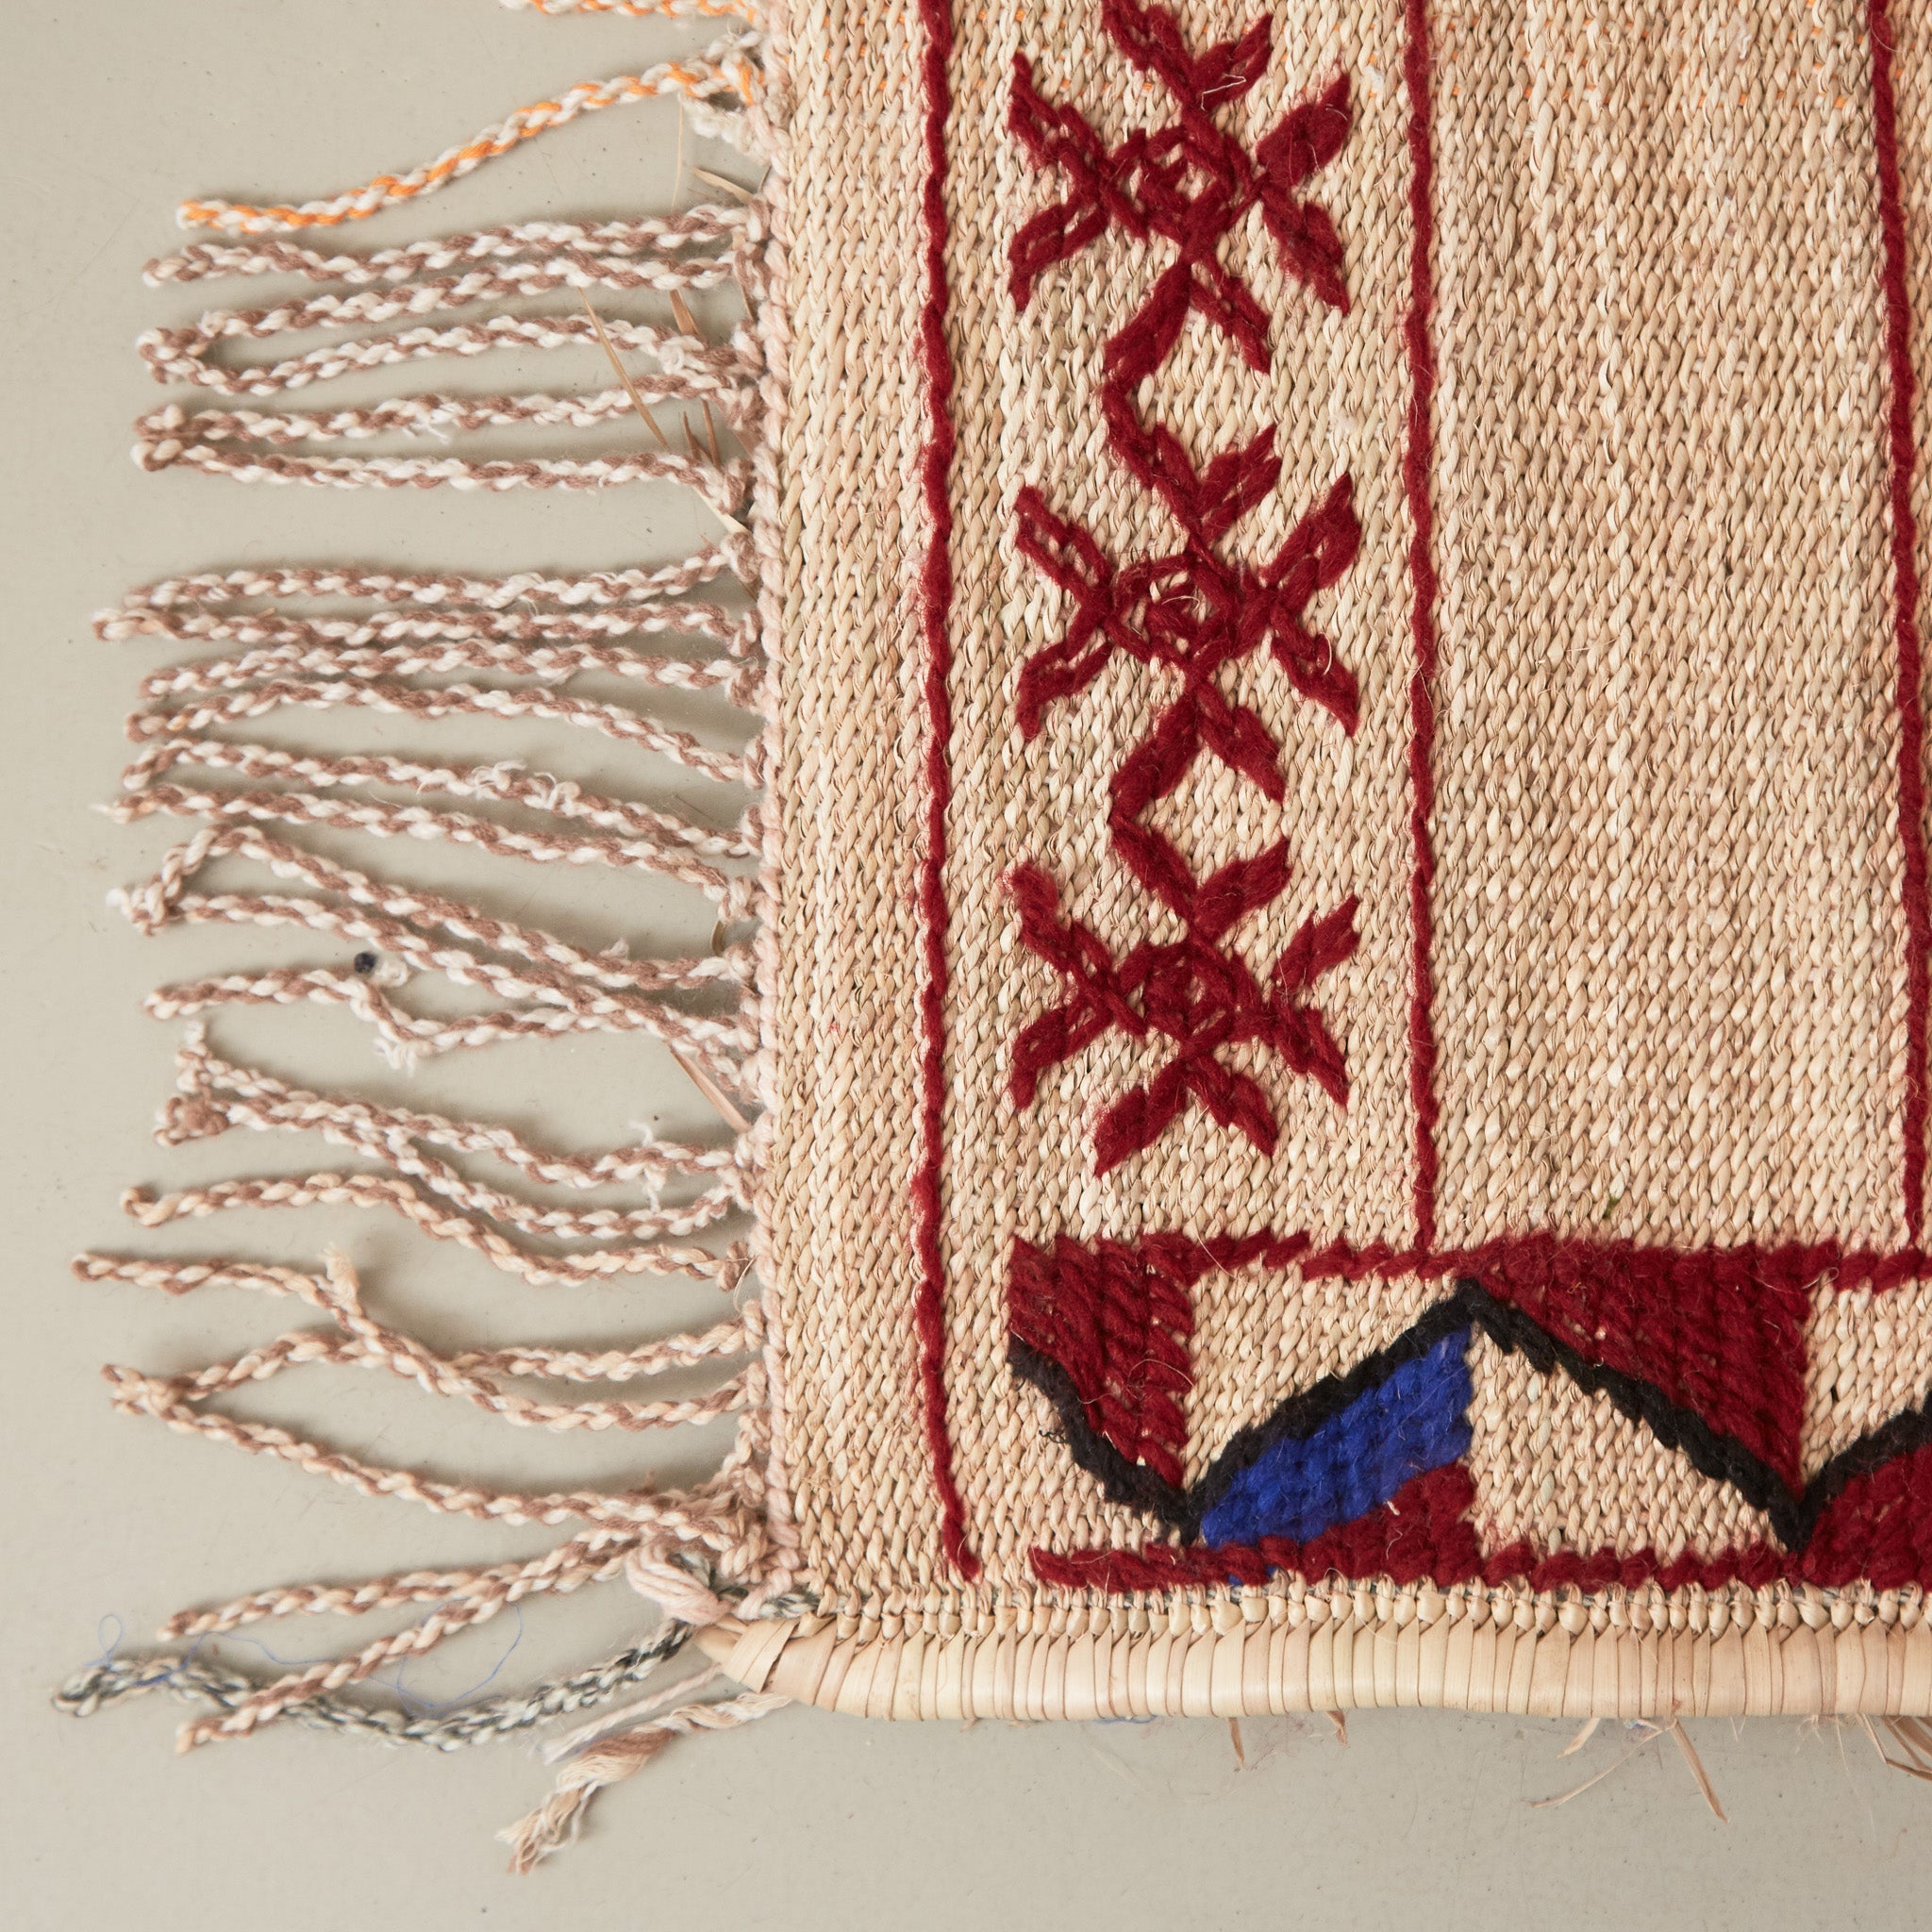 dettaglio dell'angolo e della frangia di una stuoia tappeto in paglia hassira grande in paglia di palma e ricami in lana